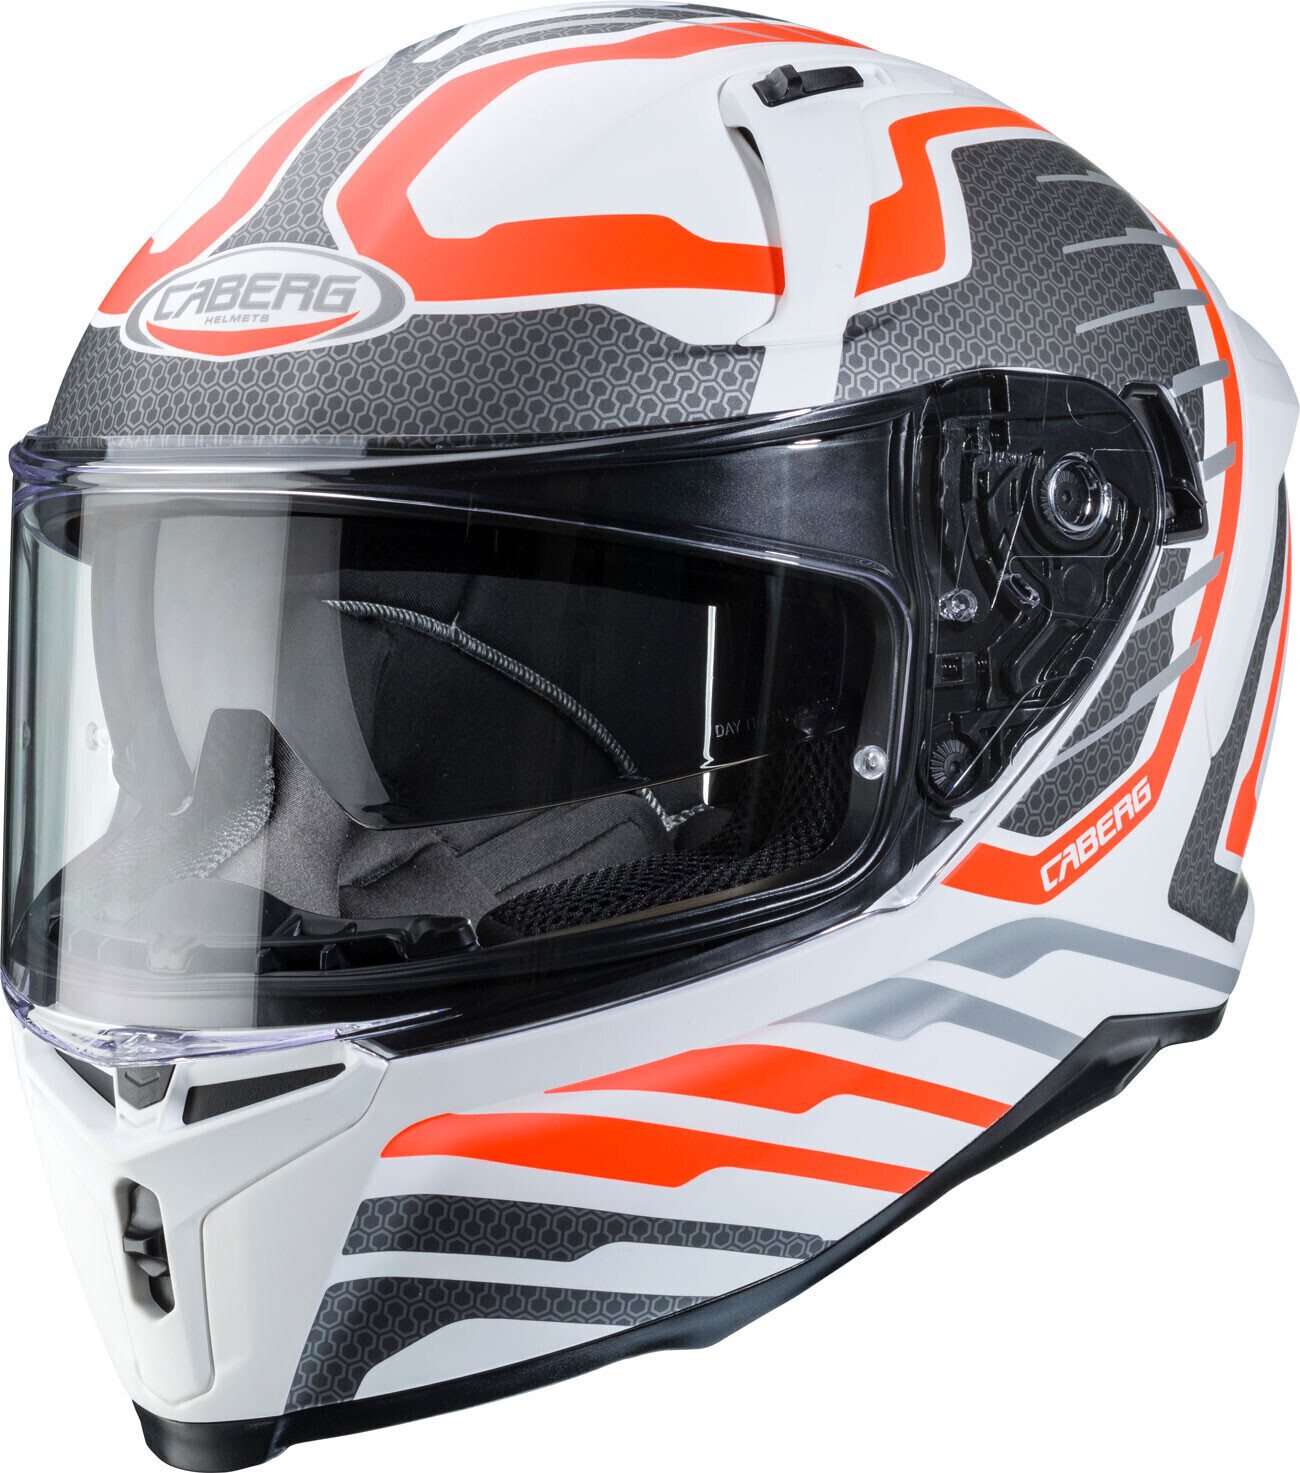 Photos - Motorcycle Helmet Caberg Avalon Forge white/orange 